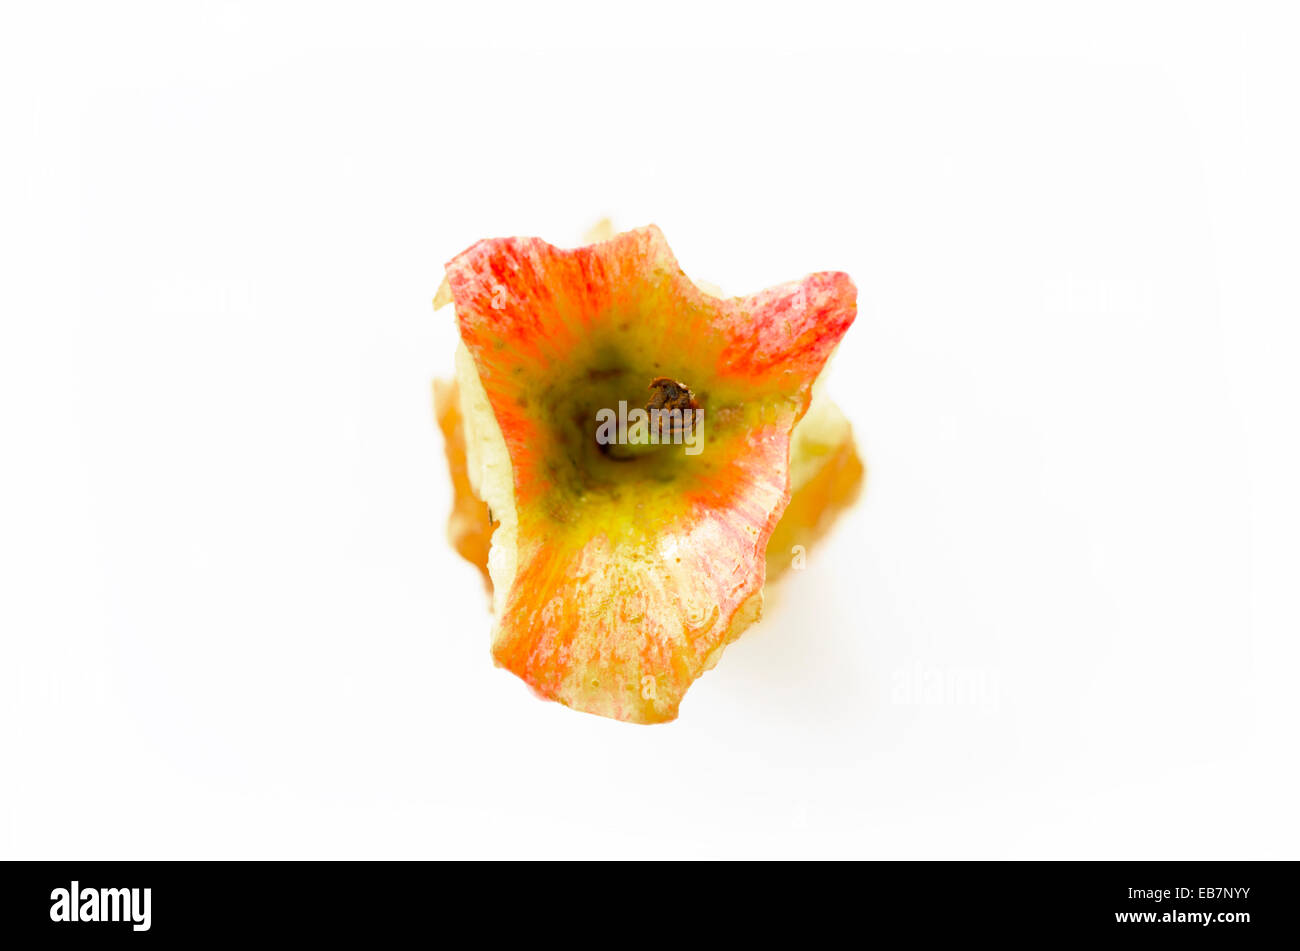 Mangiato apple core è diventato marrone, ossidazione, frutta. dall'alto Foto Stock